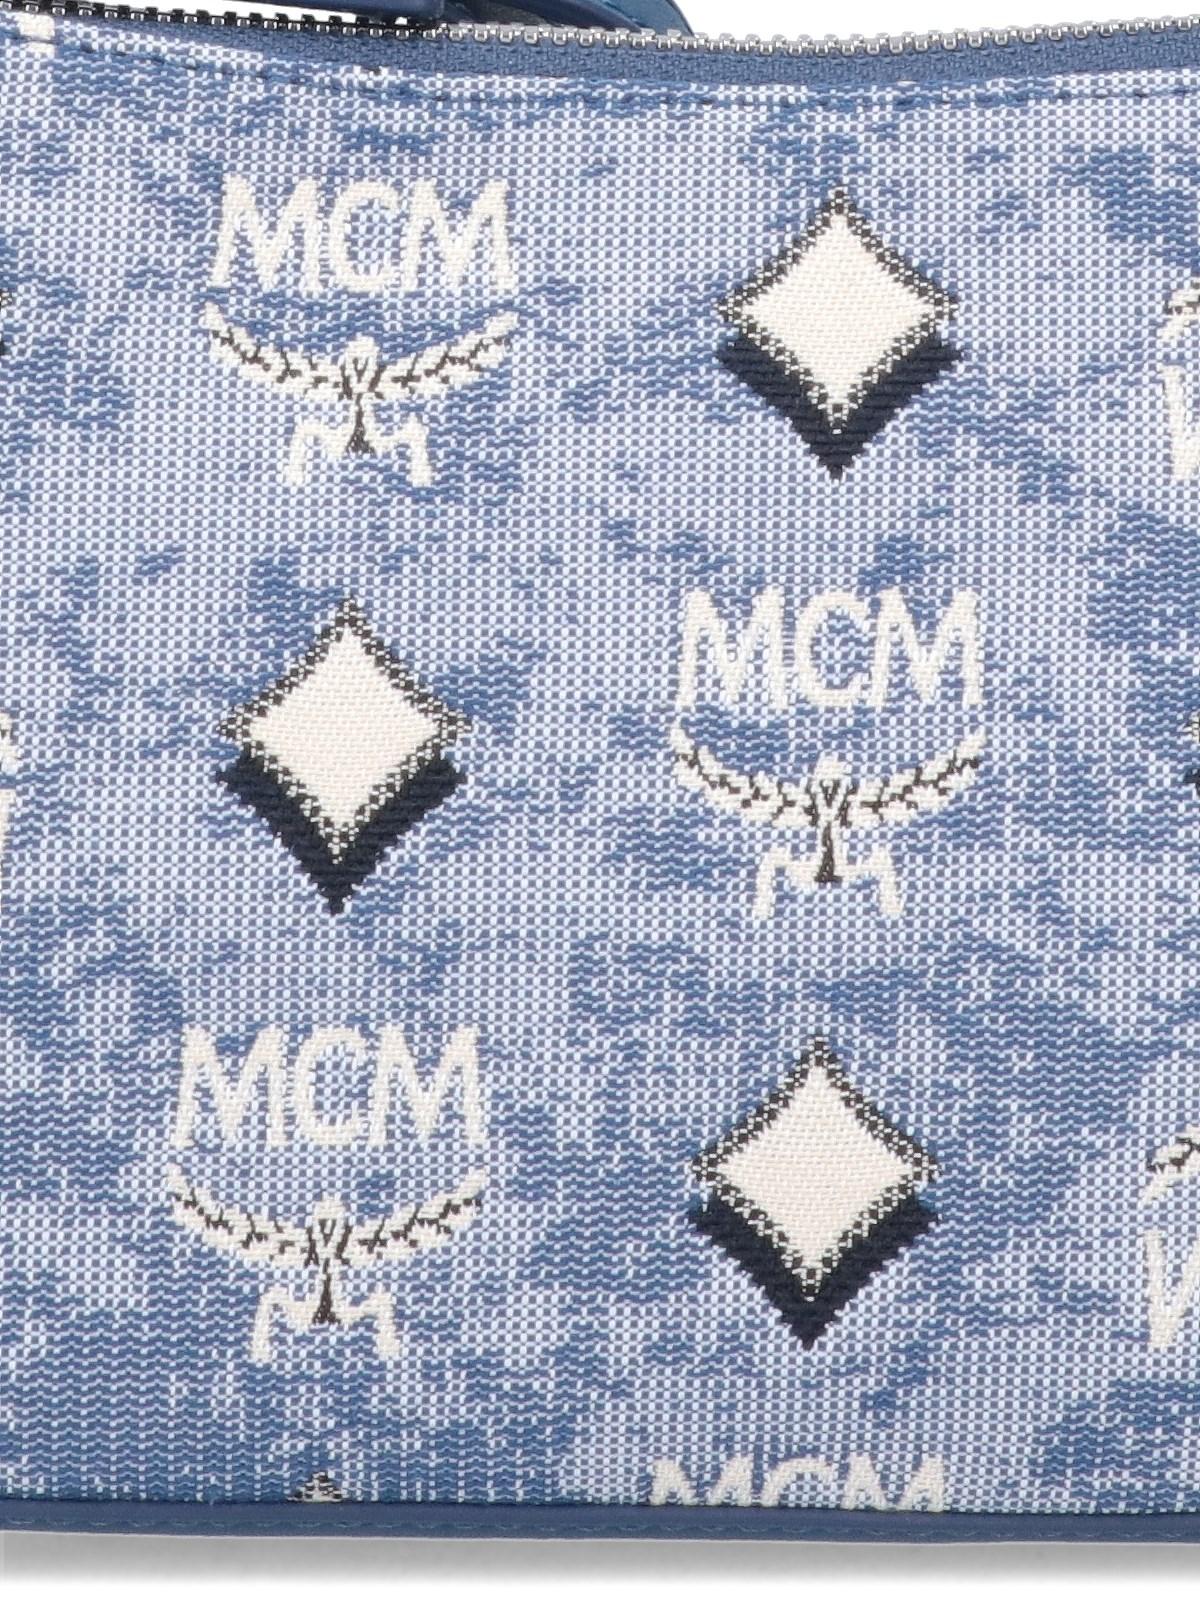 Mini Aren Shoulder Bag in Vintage Monogram Jacquard Blue